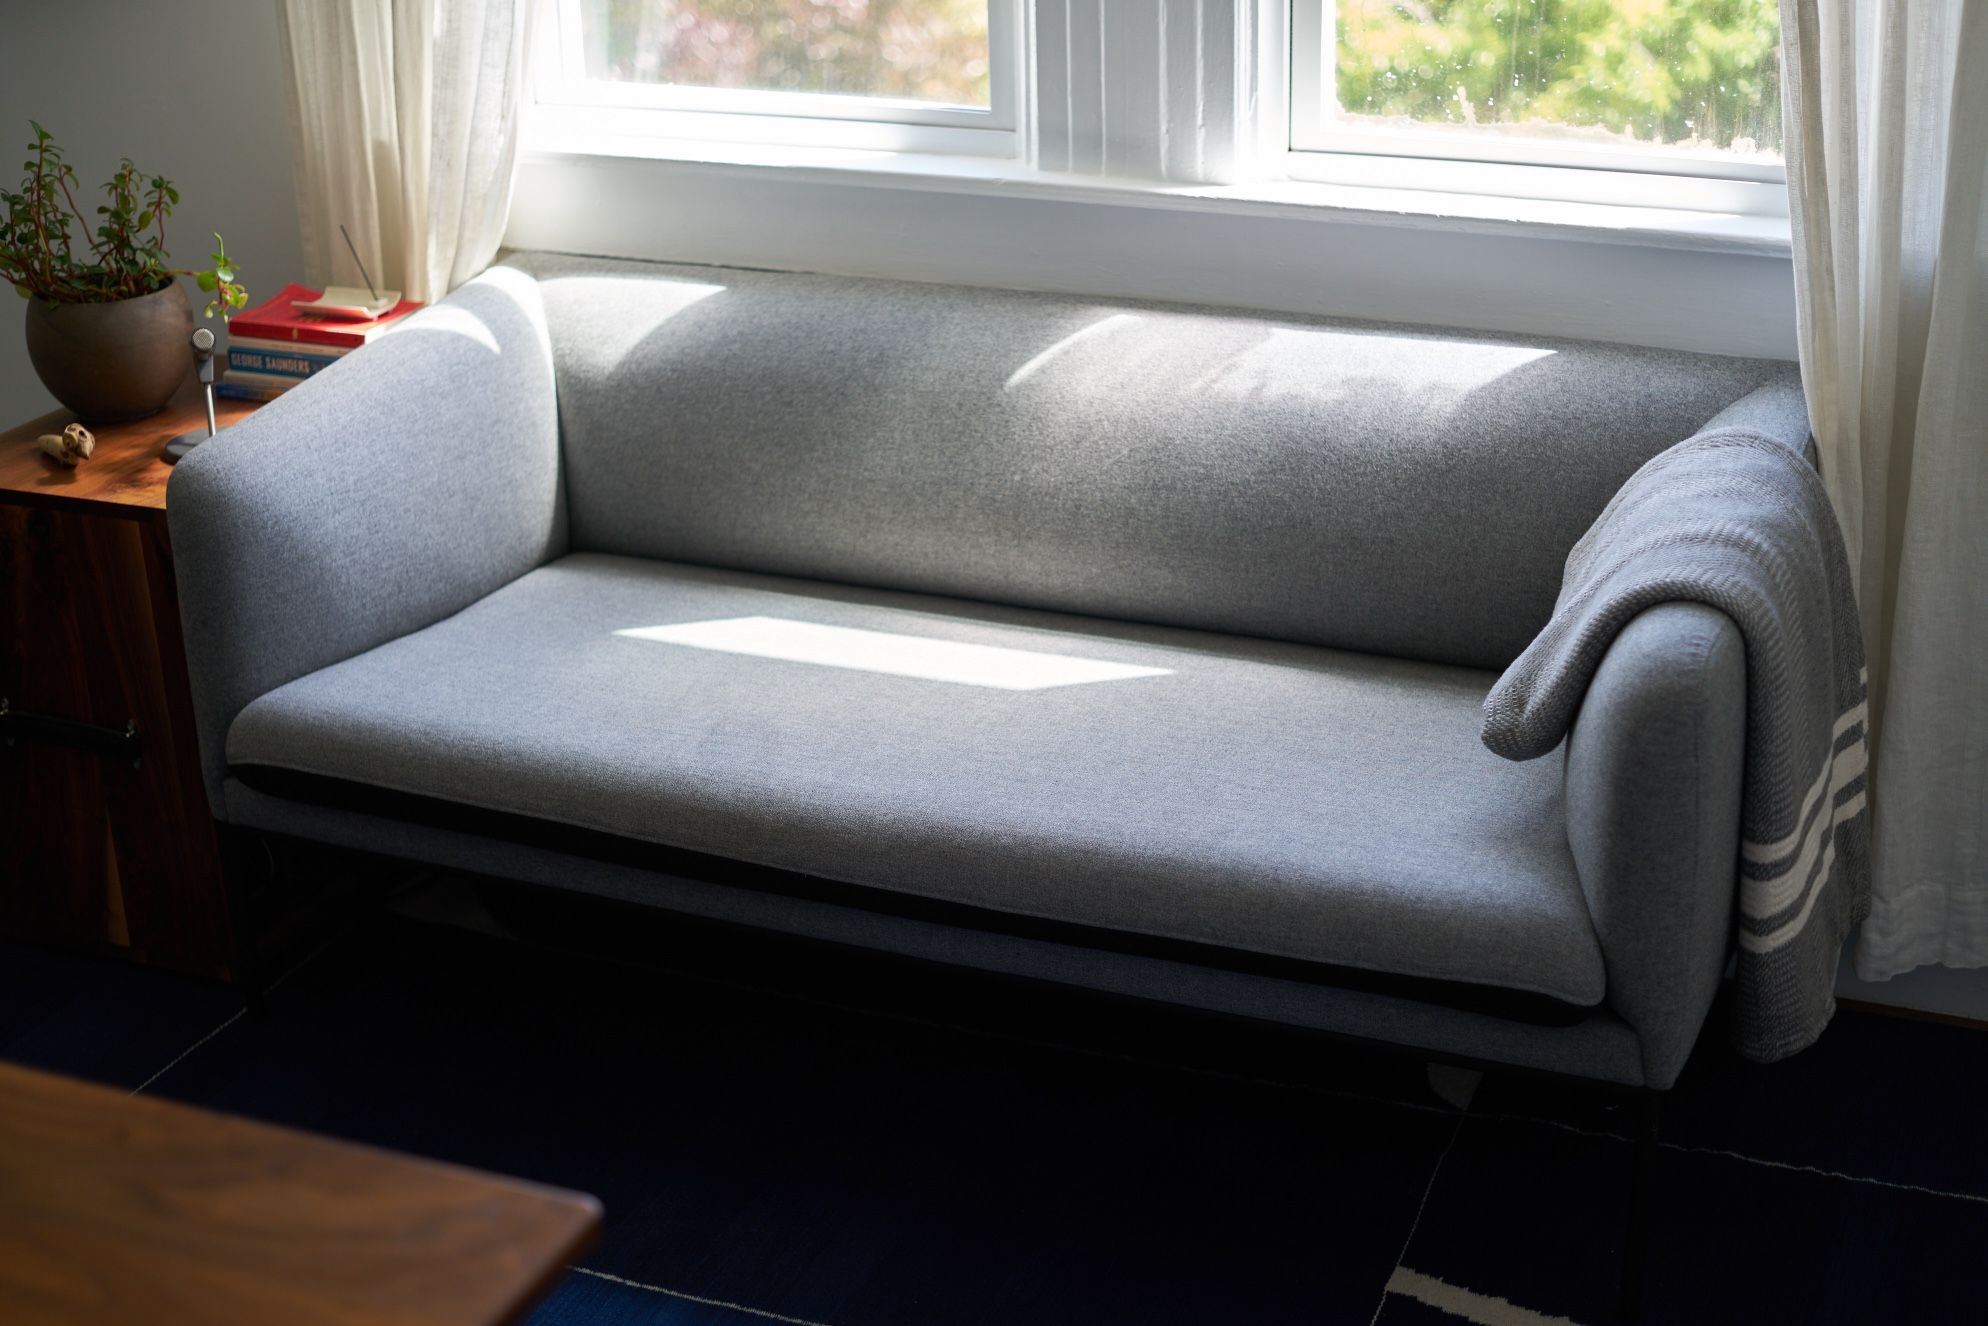 Ferm Living Turn Sofa Wool Grey